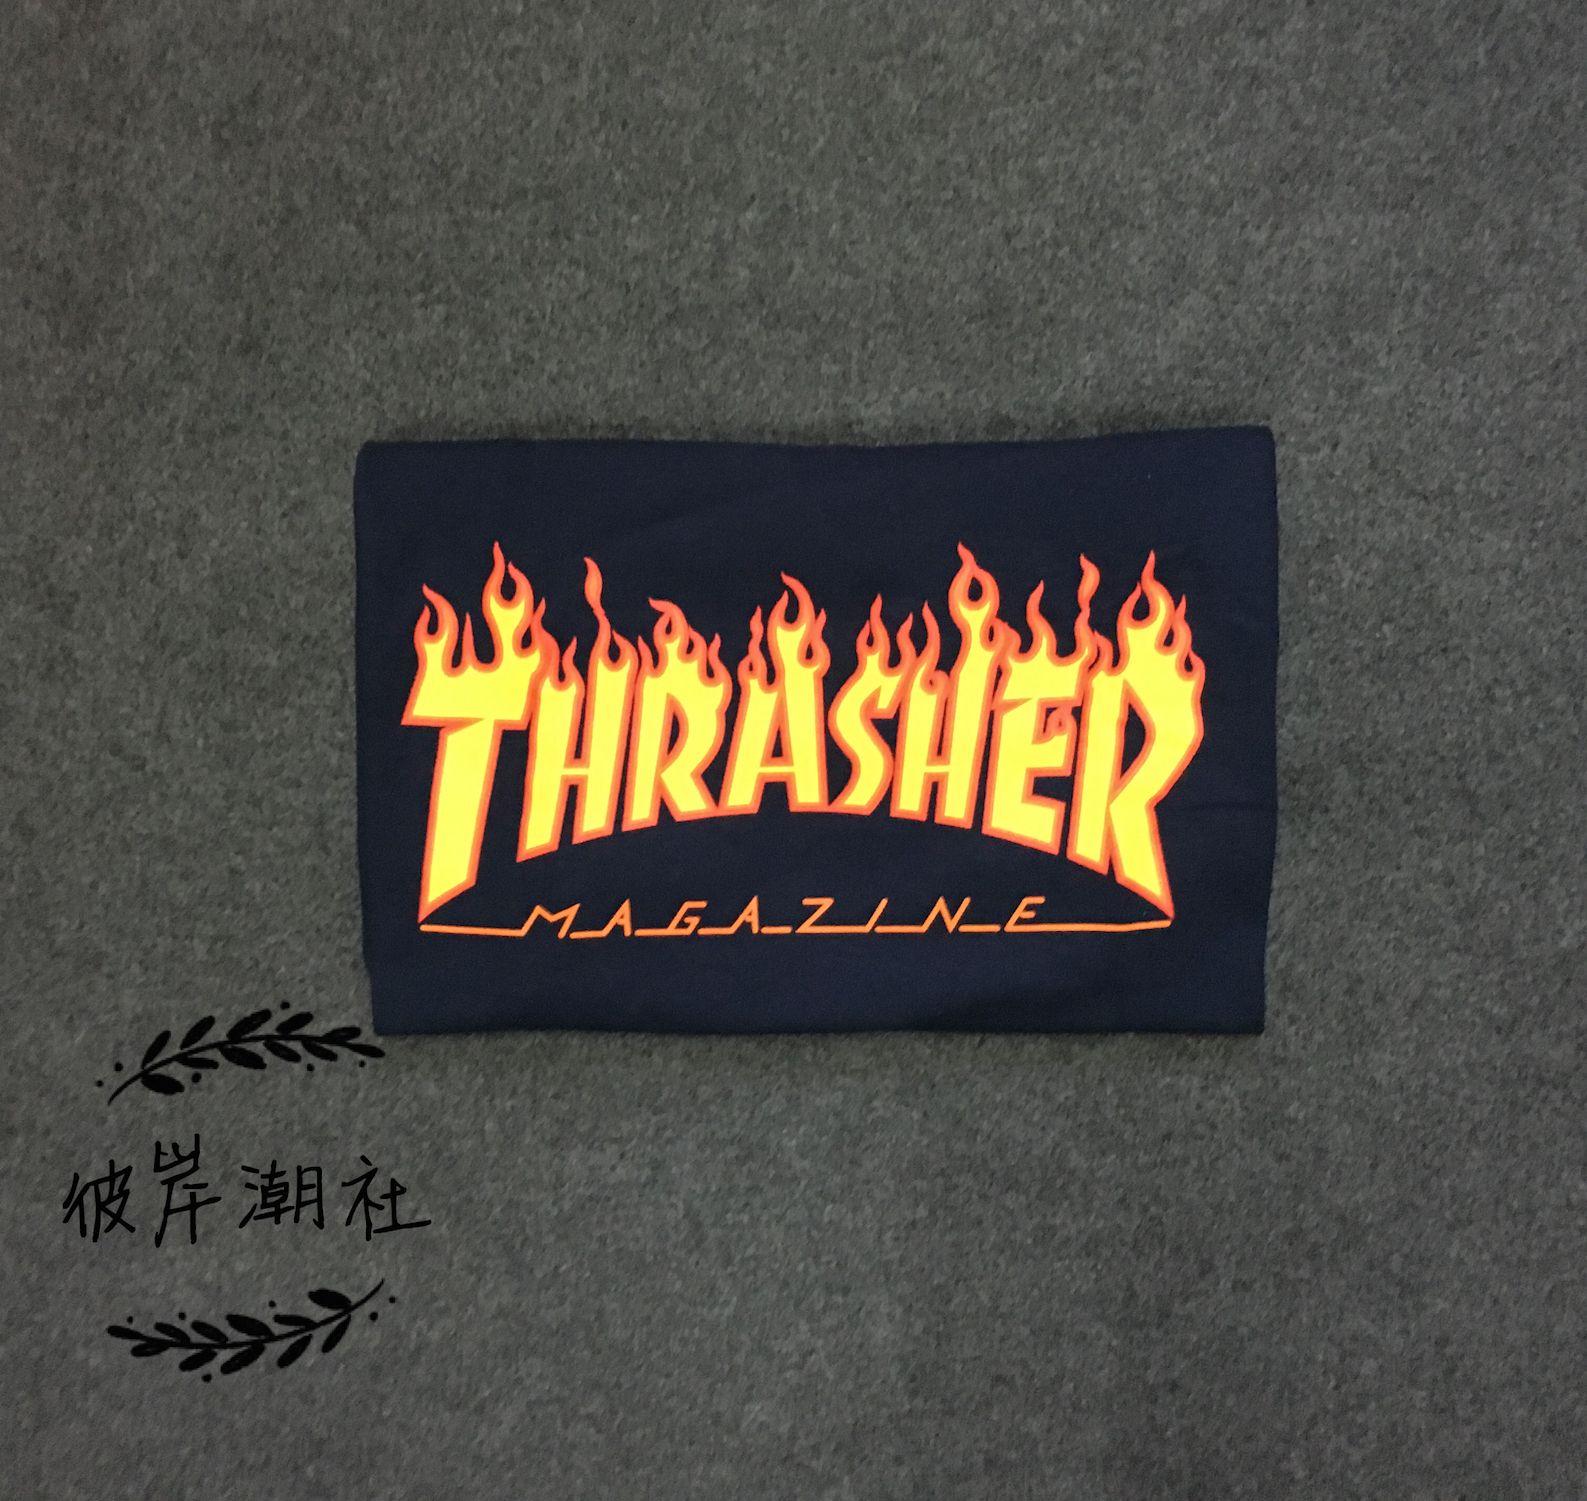 Magazine Thrasher Flame Logo - USD 68.14] (Spot) Thrasher Flame Logo Black T-Shirt flame magazine ...